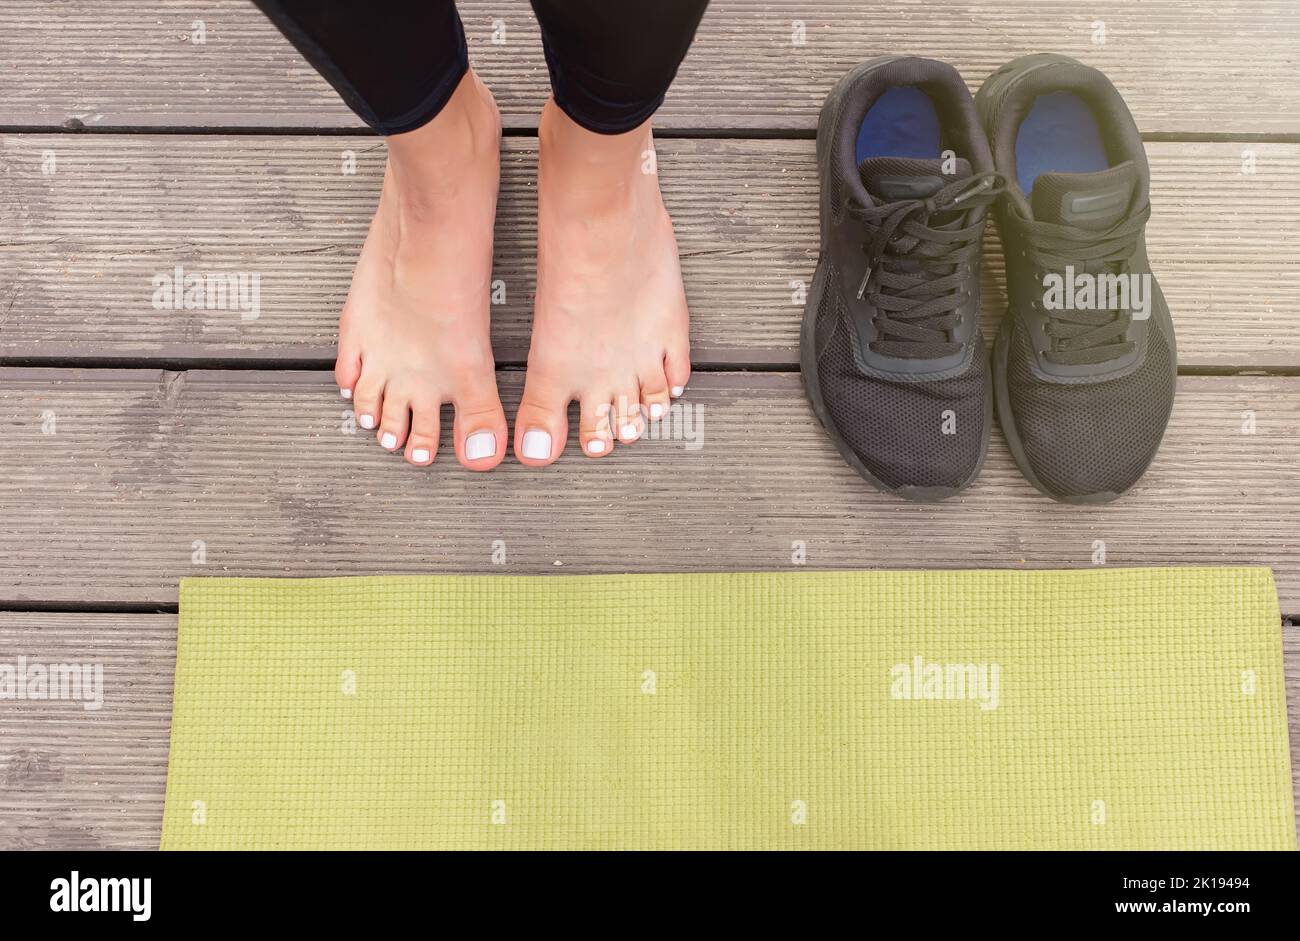 Primo piano di piedi nudi su un pavimento di legno vicino a un tappeto sportivo verde, ci sono sneakers neri nelle vicinanze Foto Stock